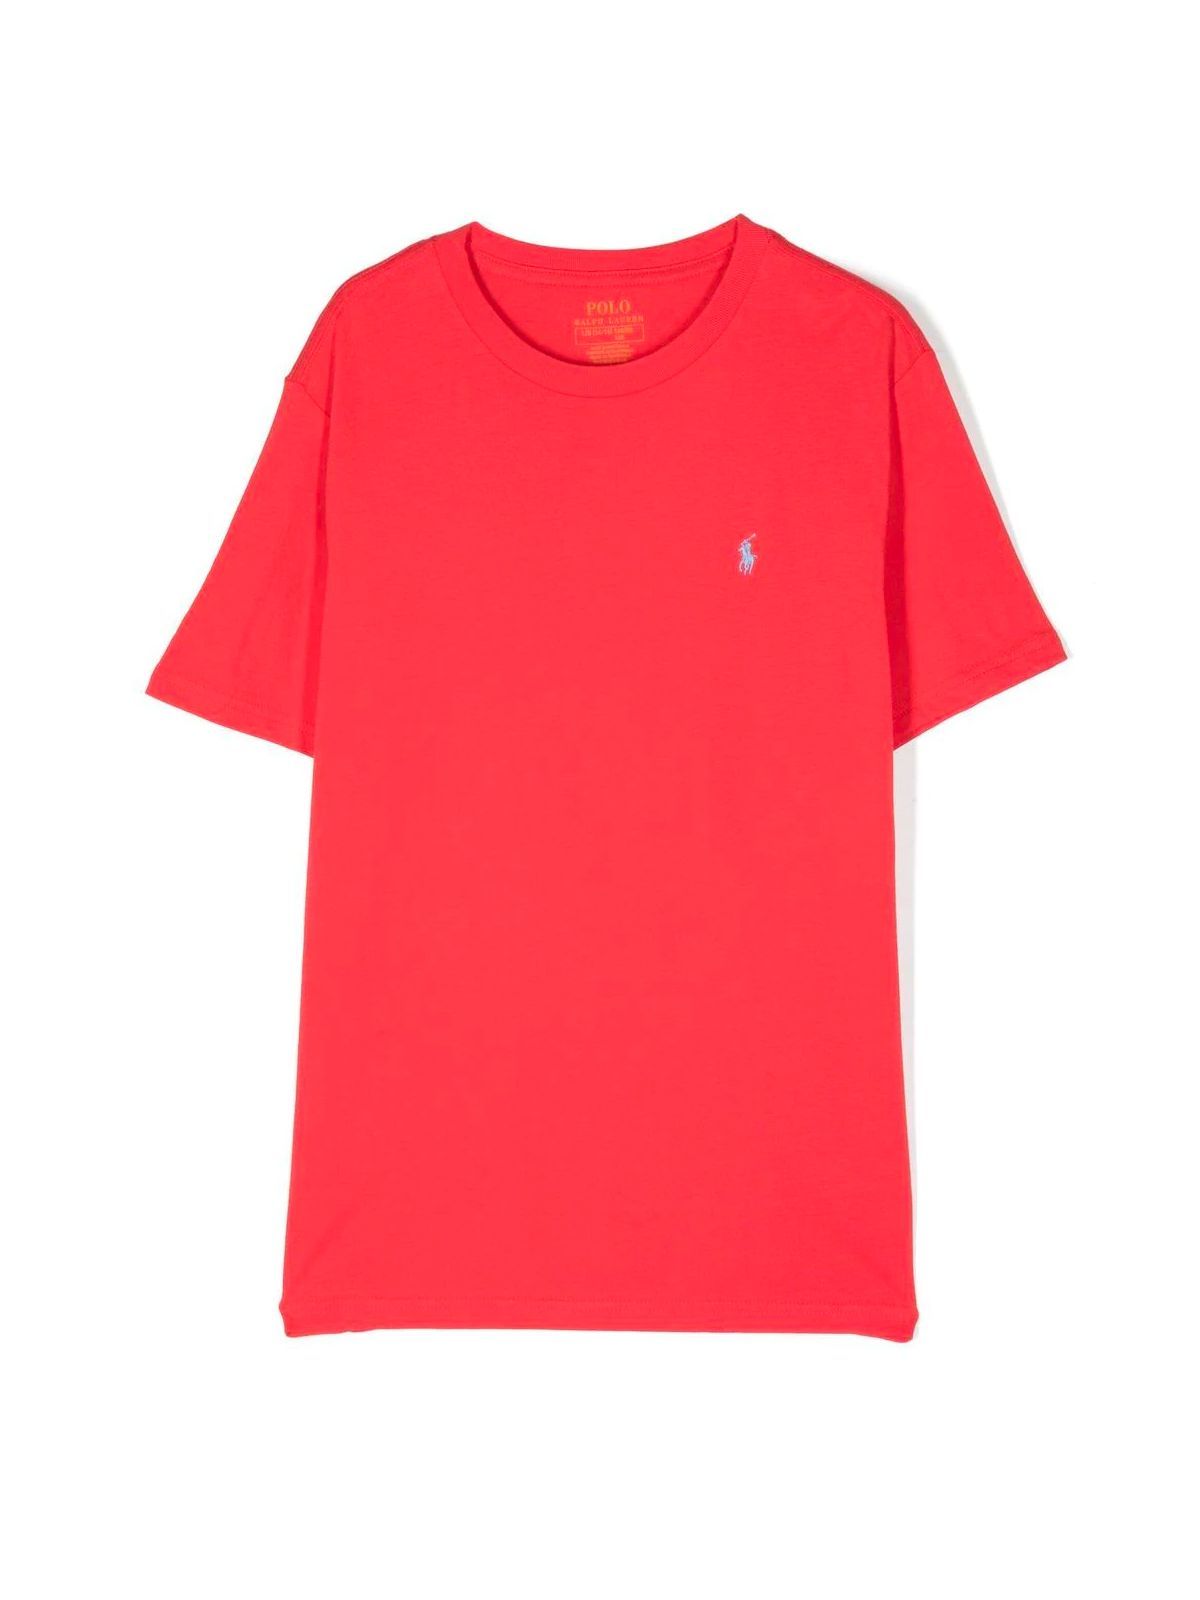 Polo Ralph Lauren Kids' Ss Cn Tops Tshirt